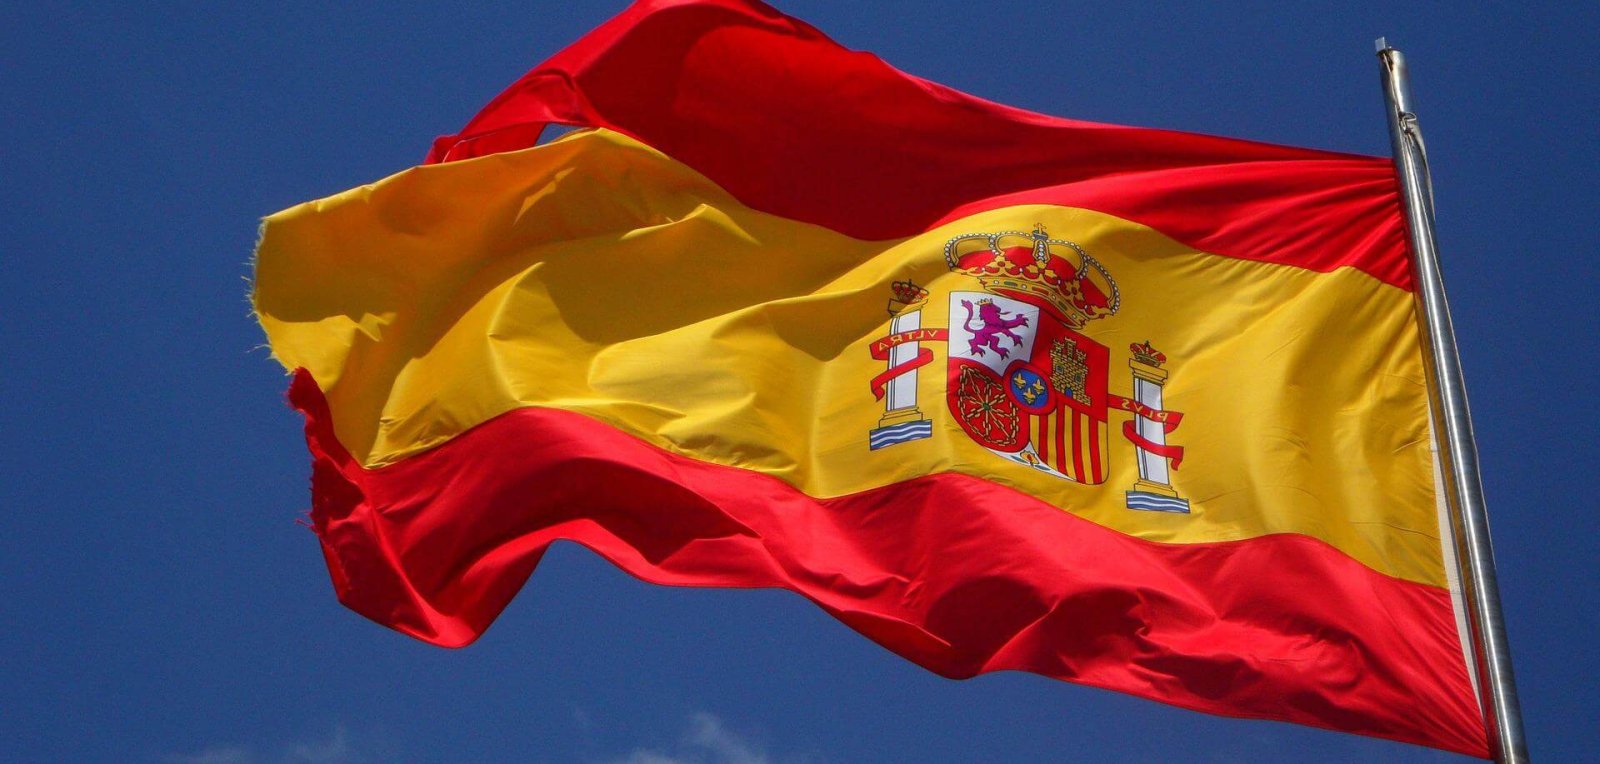 Spanish flag on mast against a blue sky backdrop